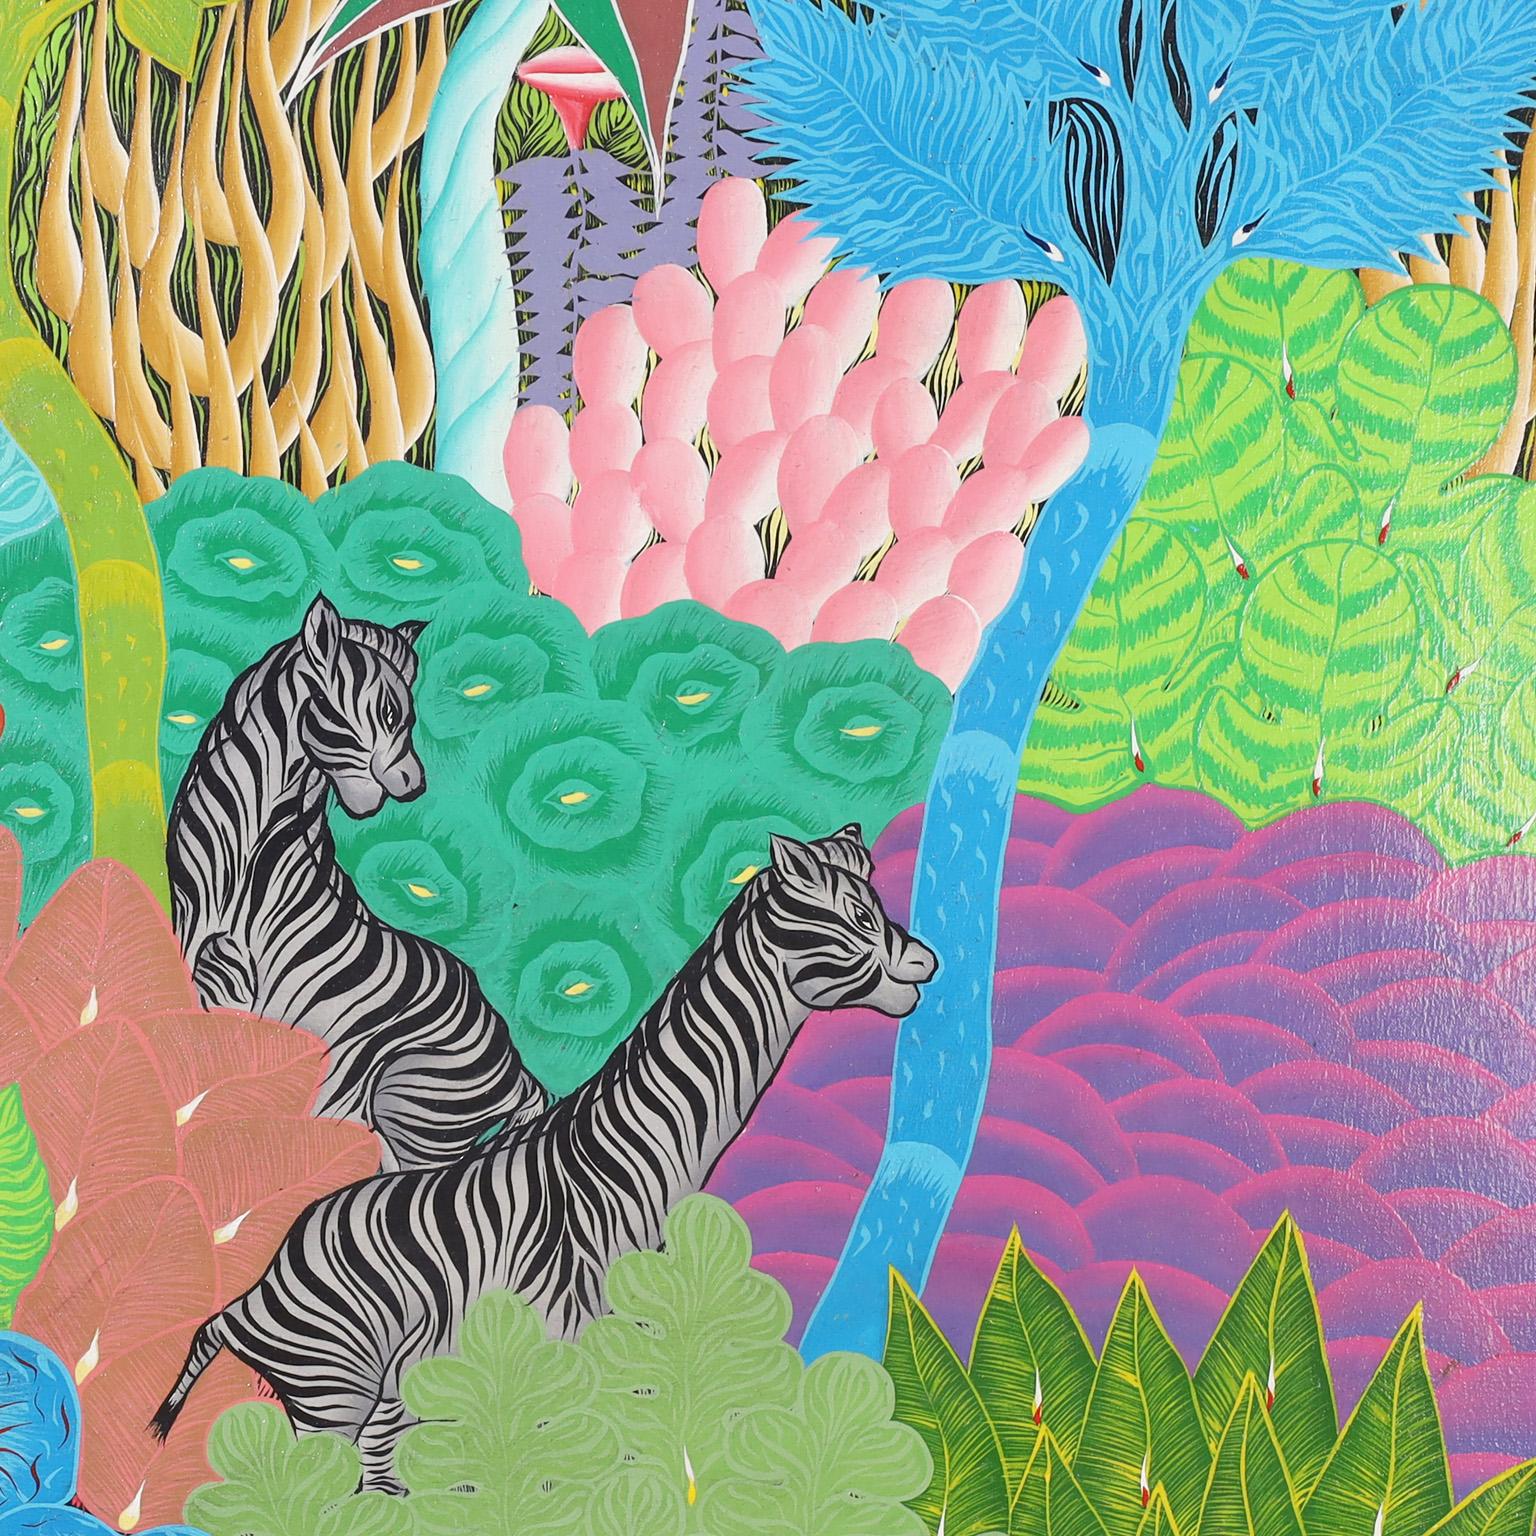 Remarquable peinture acrylique haïtienne vintage sur toile représentant des animaux africains dans un décor de jungle, exécutée dans un style naïf distinctif. Signée par l'artiste Eustache Loubert et présentée dans son cadre d'origine en acajou.